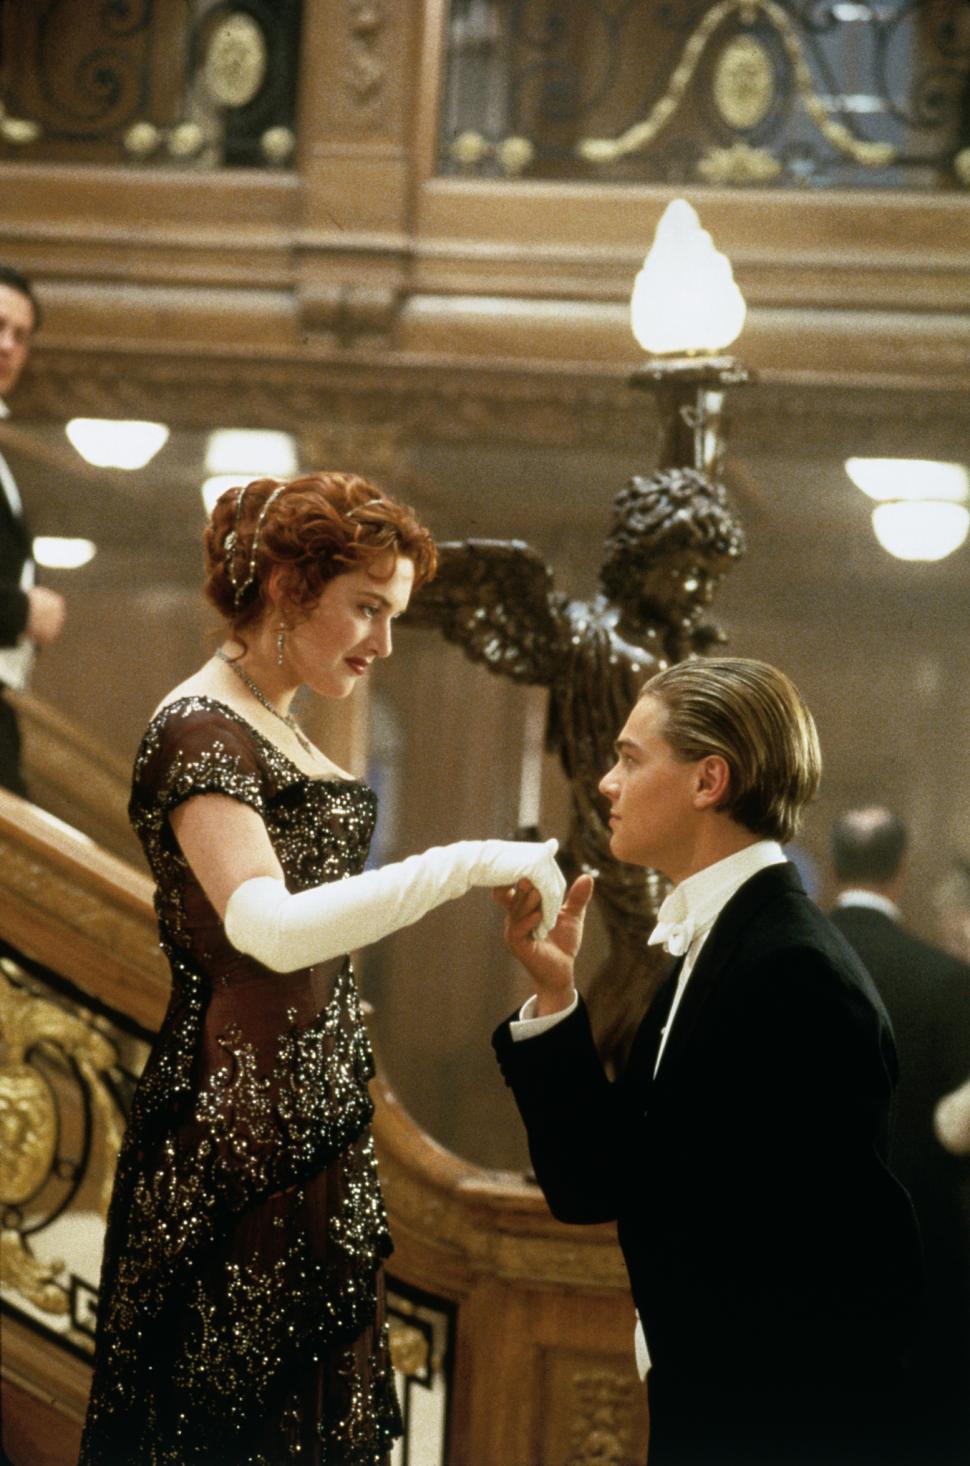 ¿QUIÉN NO LA VIO? “Titanic” se disfruta una y otra vez. Rose y Jack son los amantes a bordo.